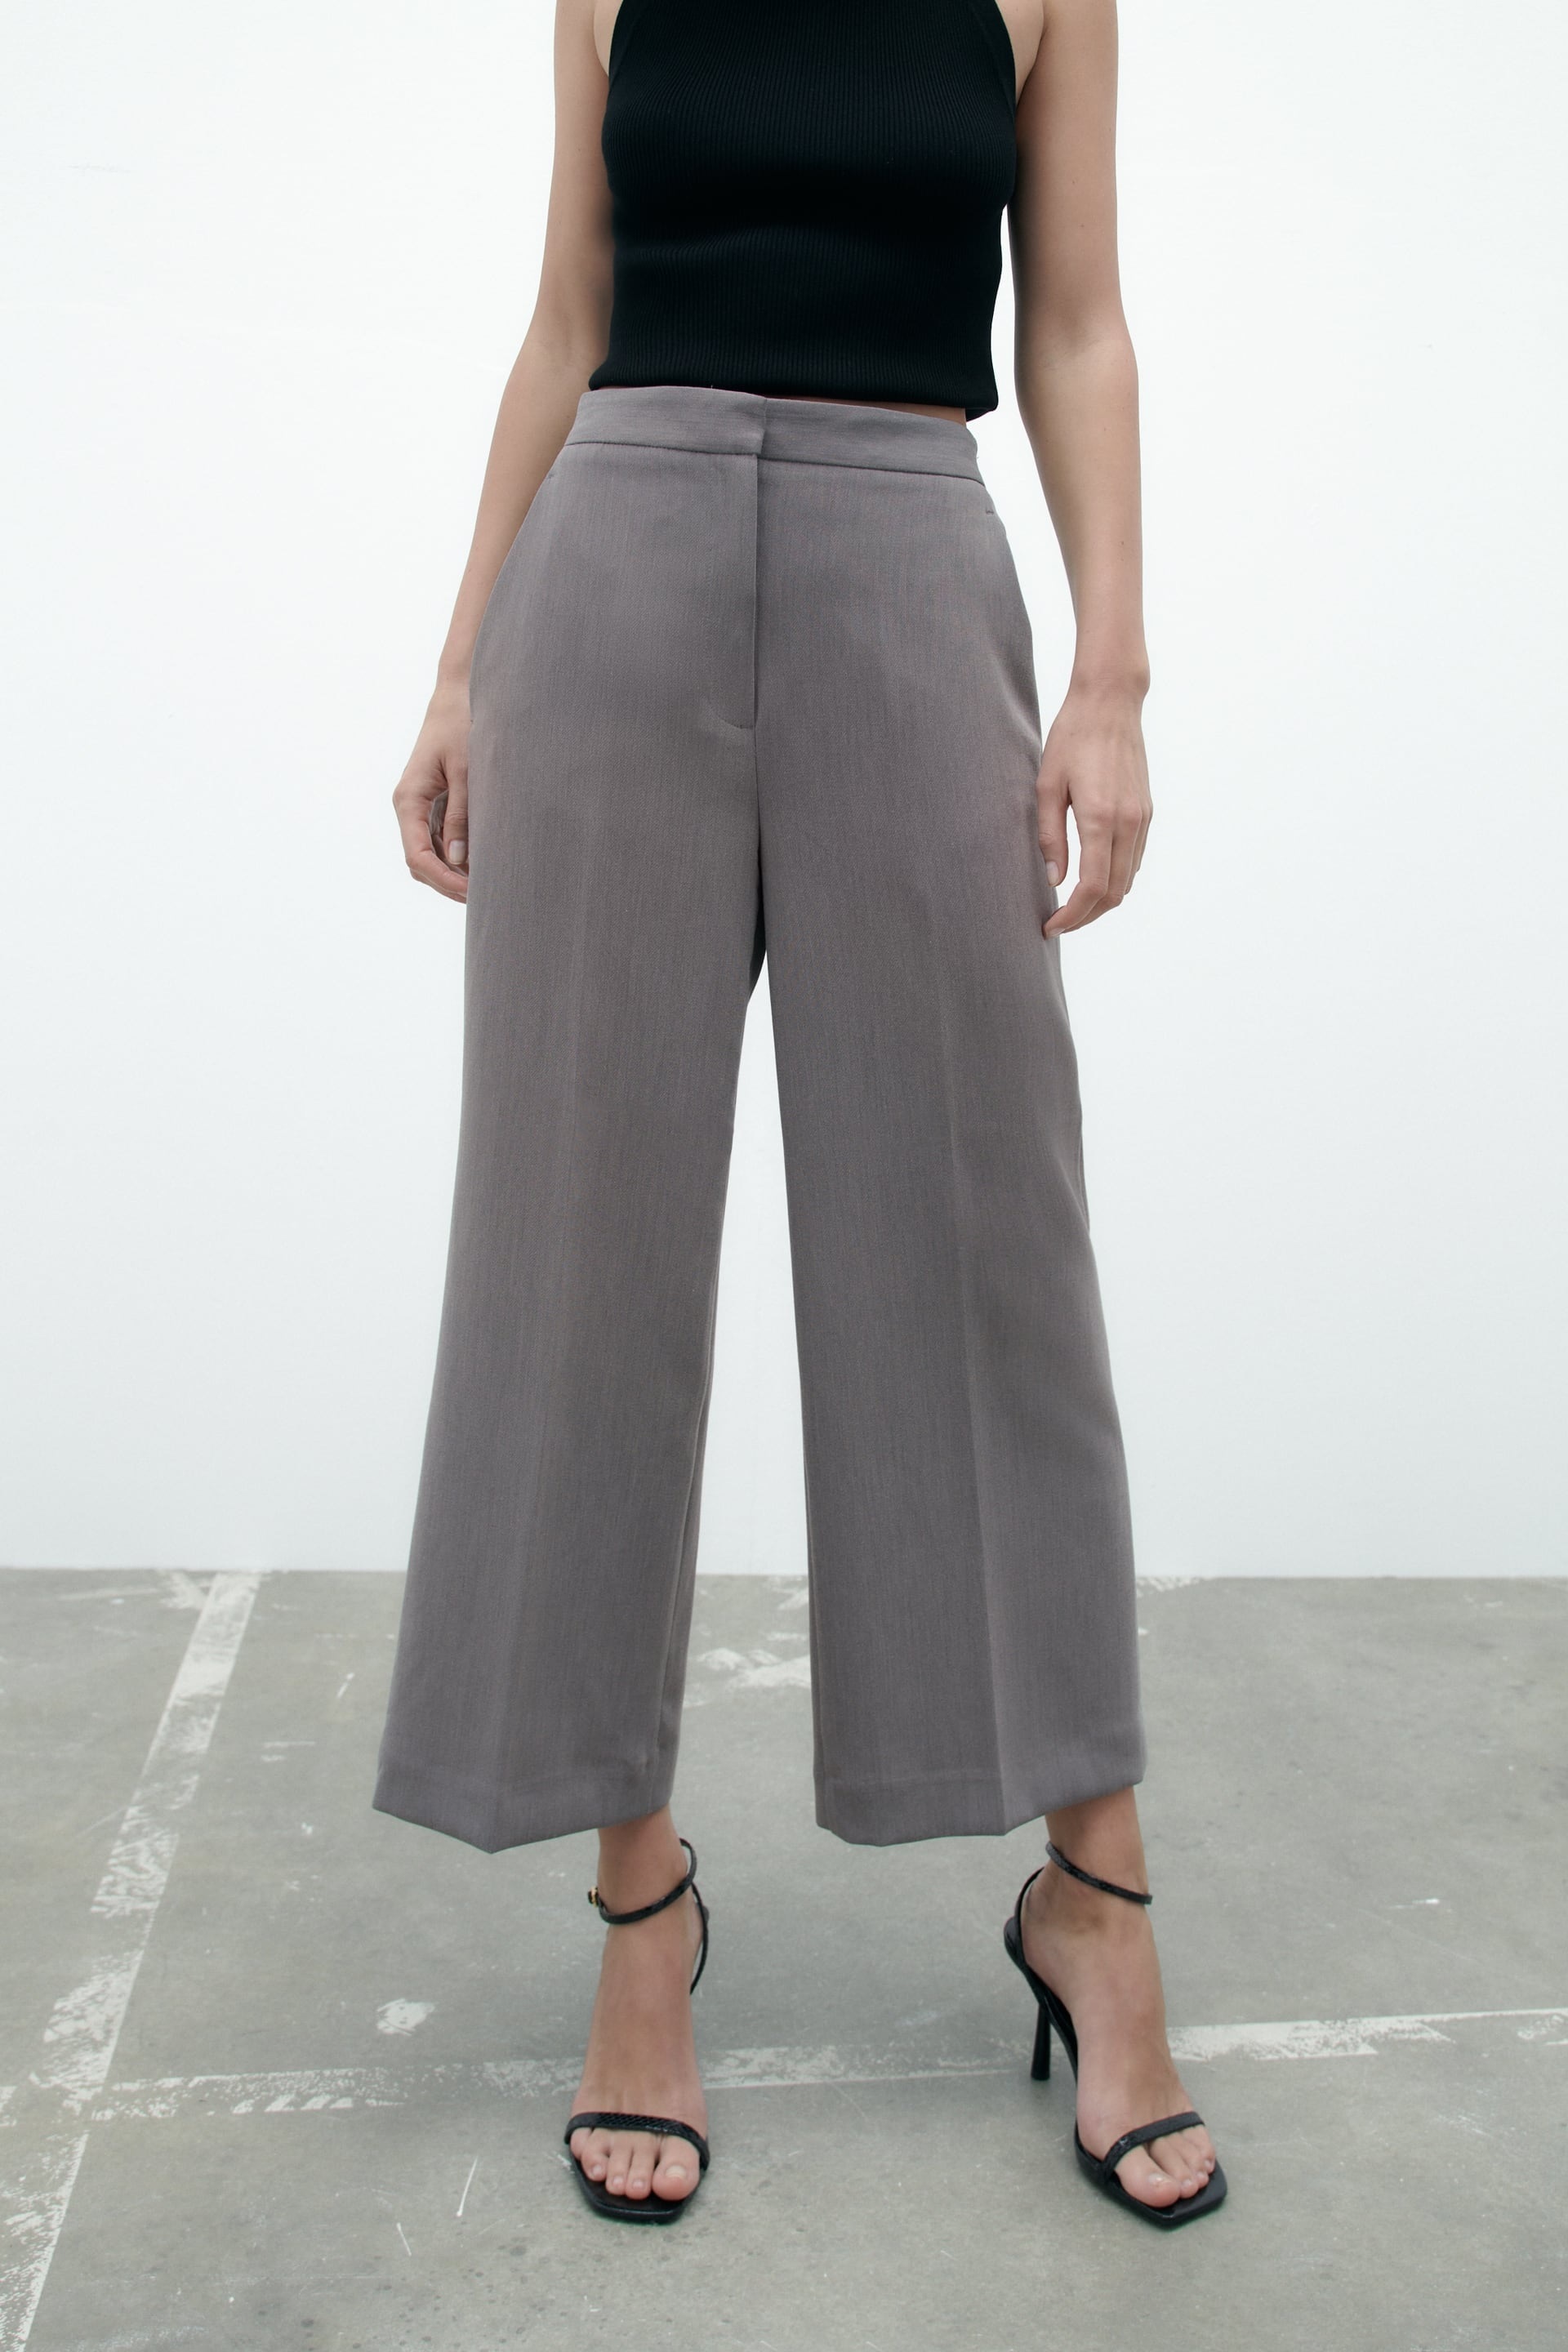 ALT: Los 12 pantalones culotte que ms estilizan, de El Corte Ingls a Mango